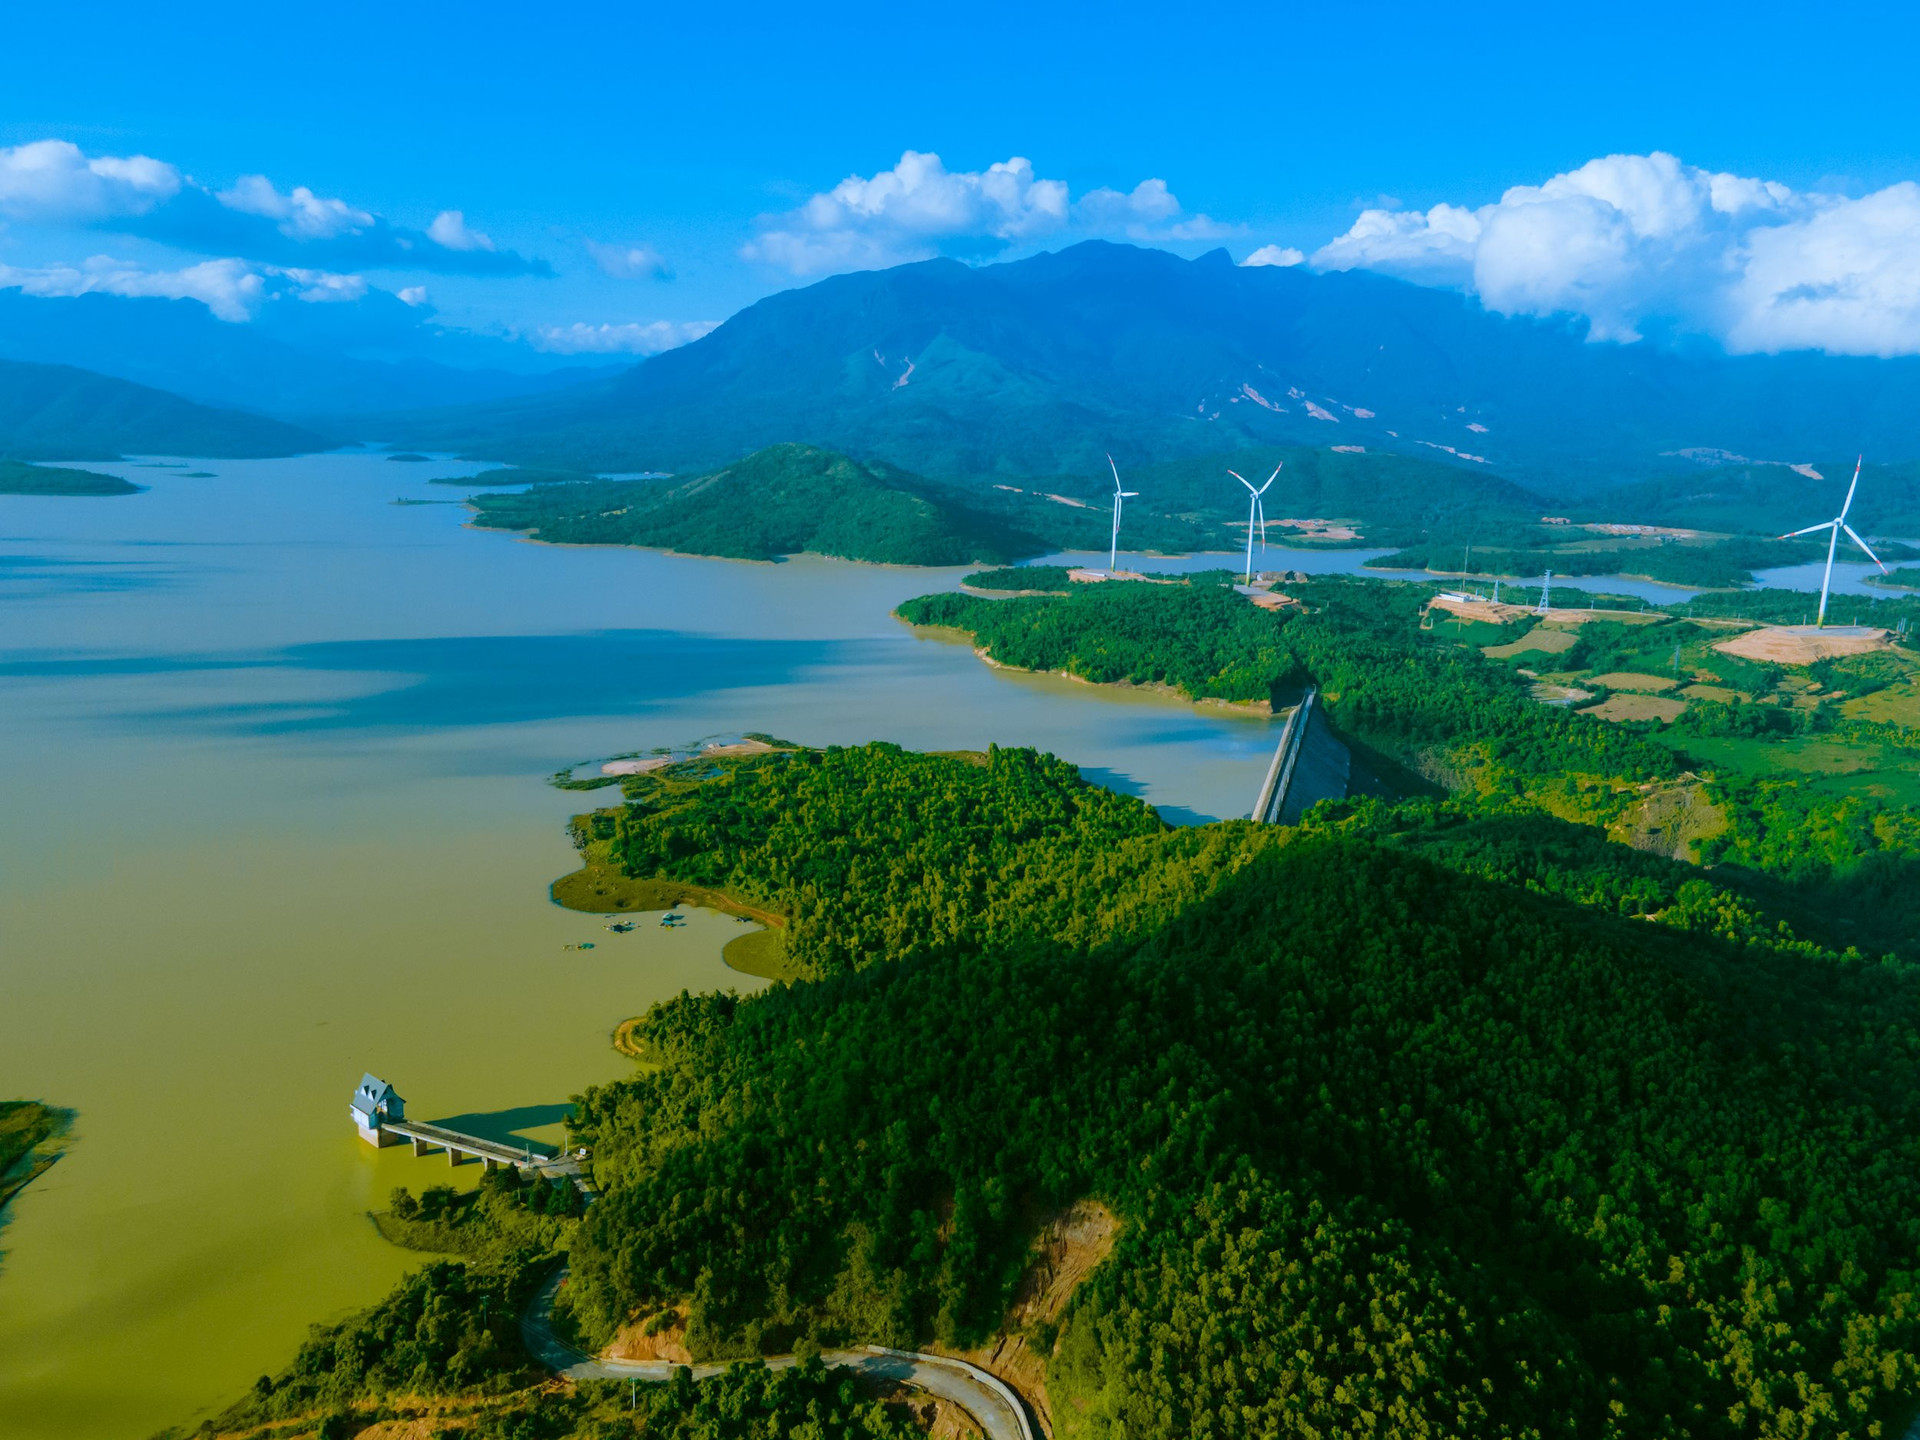 Doanh nghiệp Trung Quốc muốn làm thủy điện 500MW tại Quảng Trị - Ảnh 1.